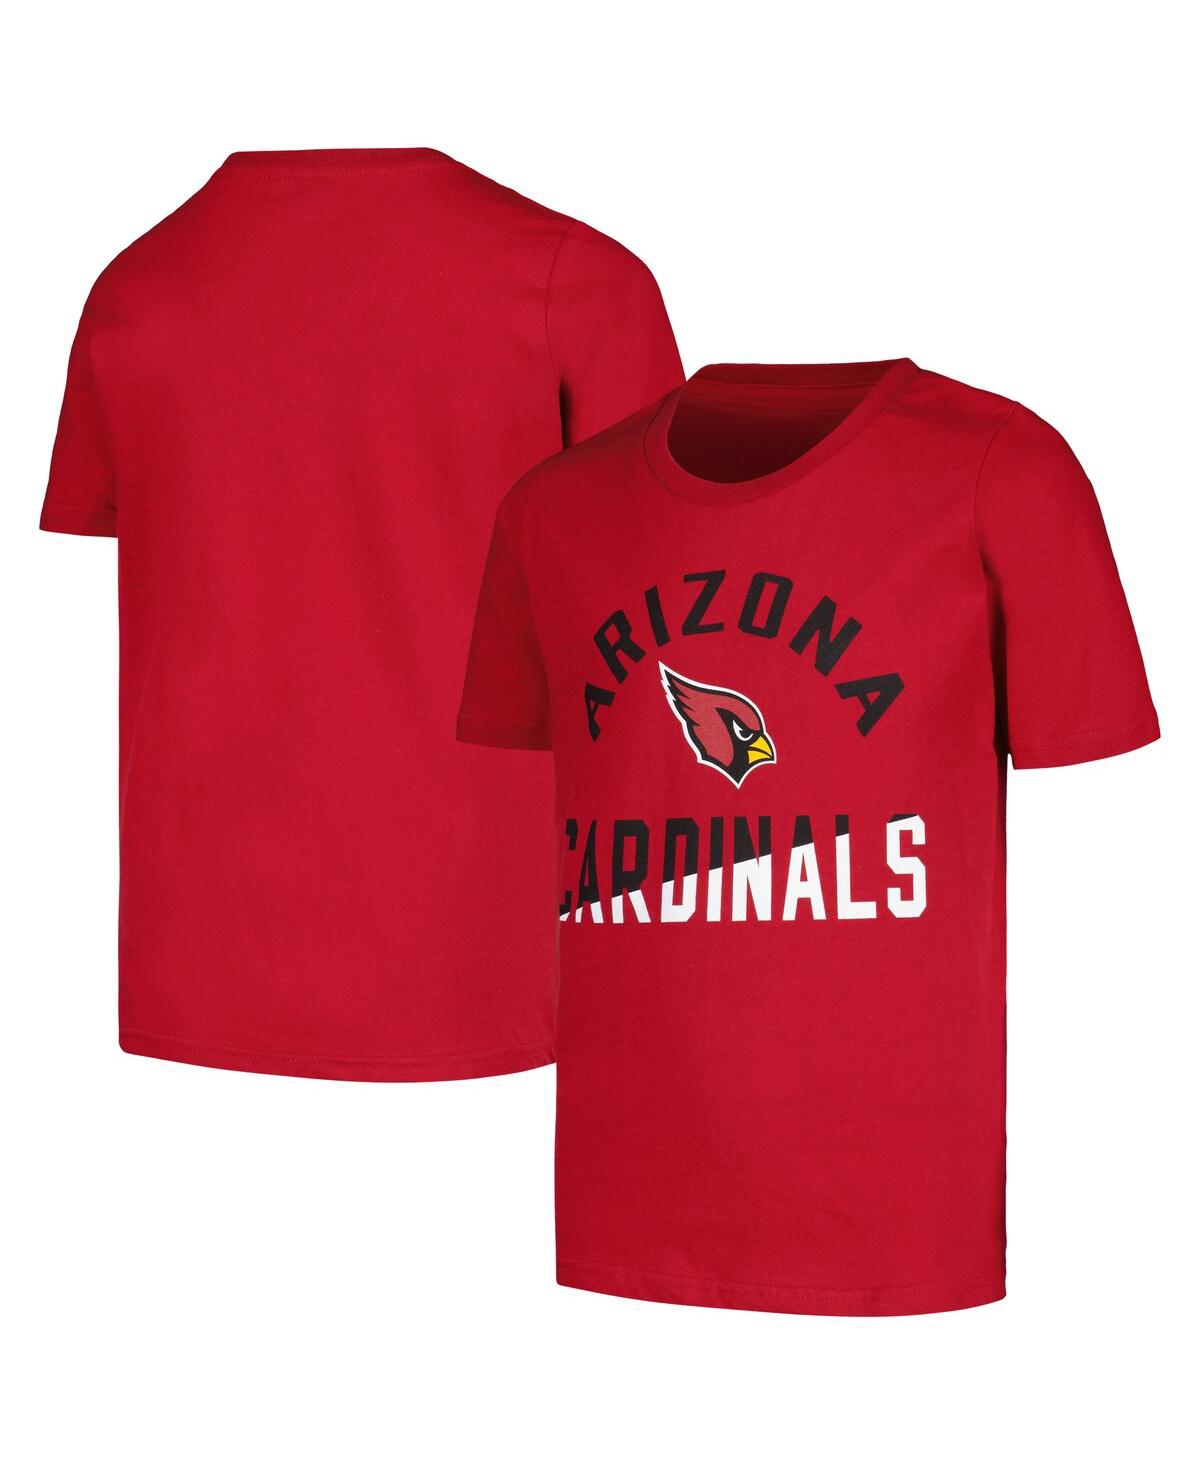 Outerstuff Kids' Big Boys Cardinal Arizona Cardinals Halftime T-shirt